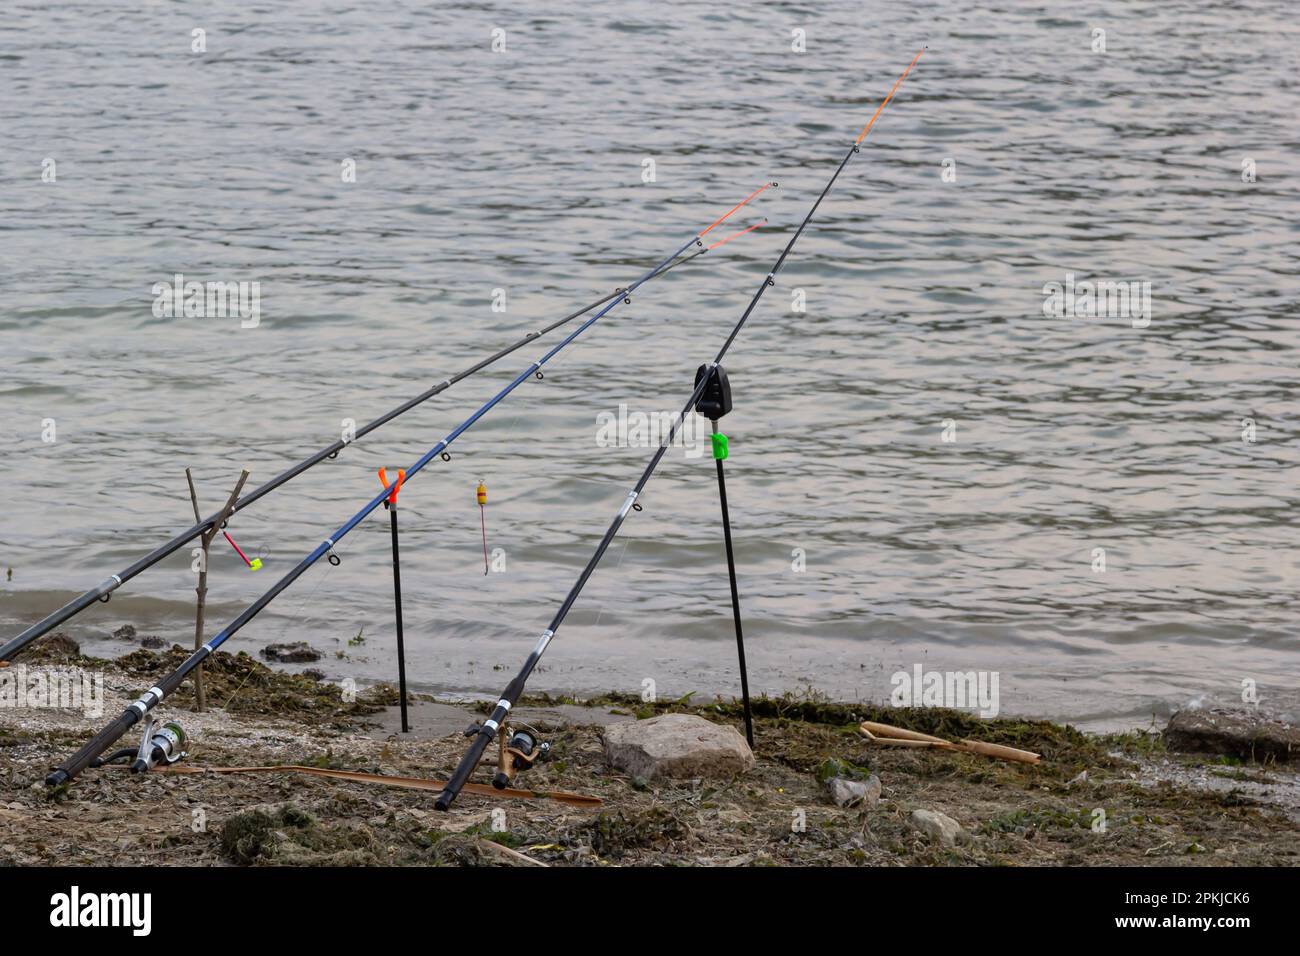 Cañas de pescar y equipo de pesca en la orilla del río, la costa